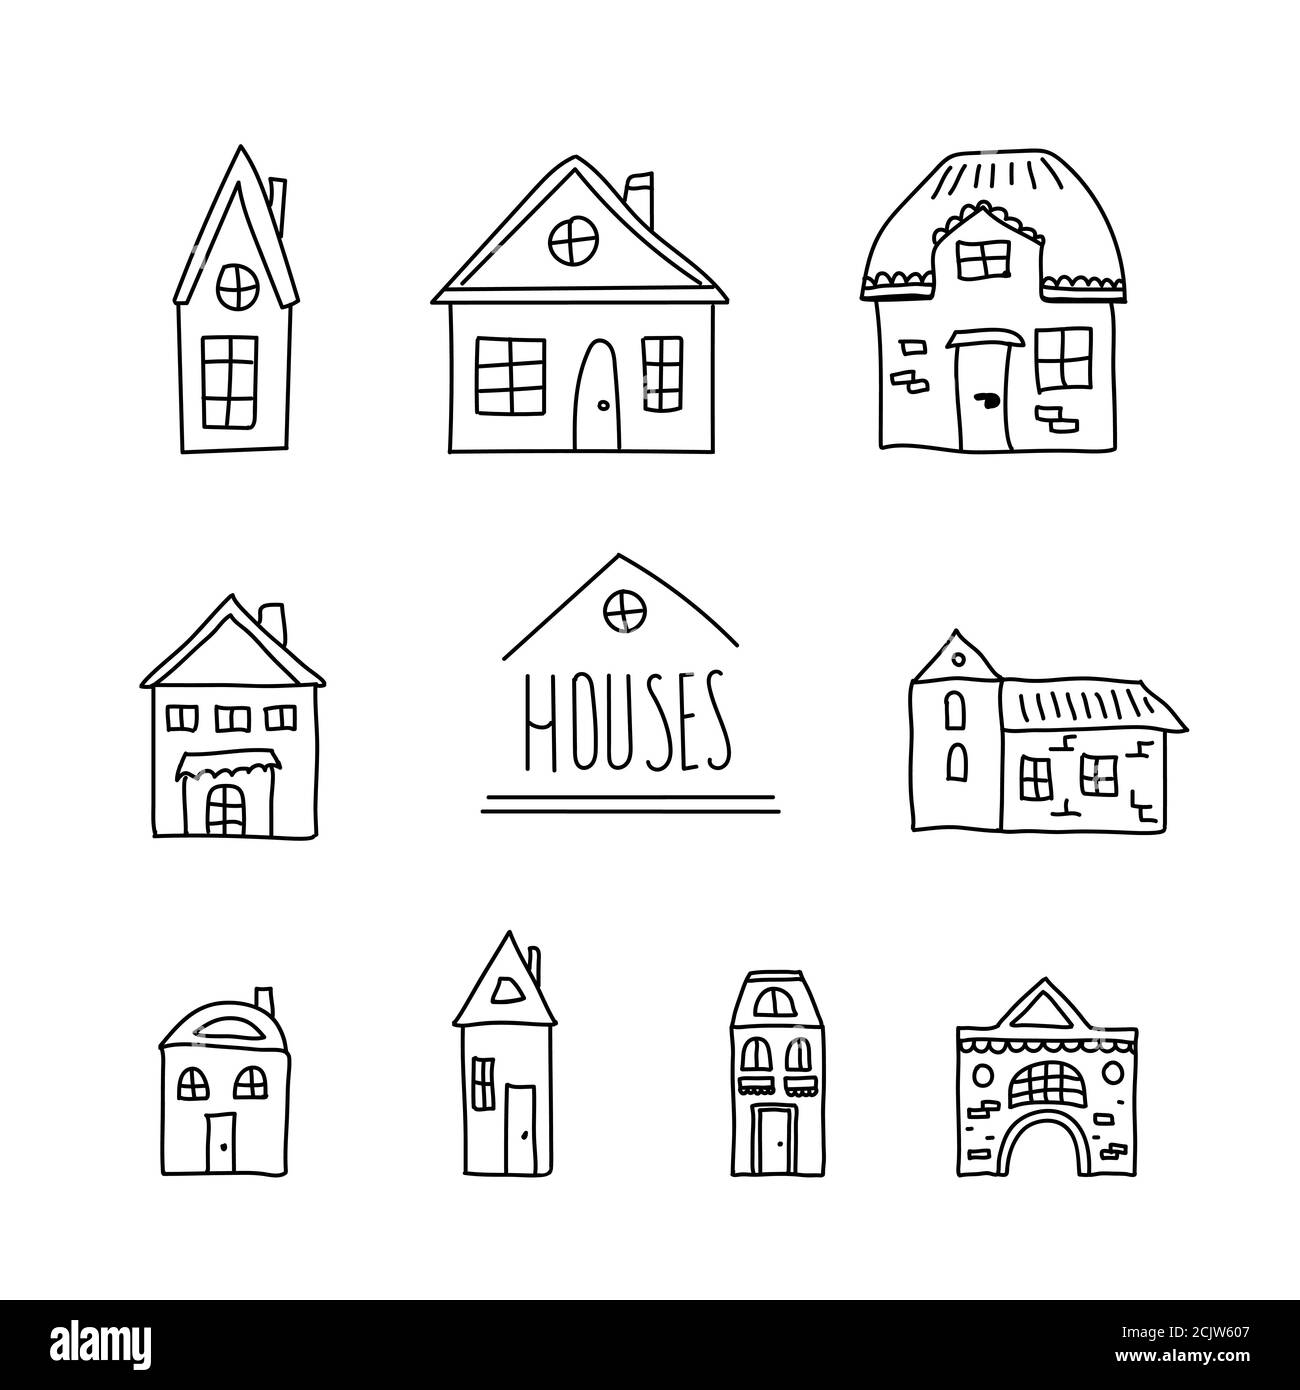 Handgezeichneter Satz Doodle Häuser. Dünne schwarze Linie. Verschiedene Fenster, Türen und Dächer. Vektorgrafik isoliert auf Weiß Stock Vektor